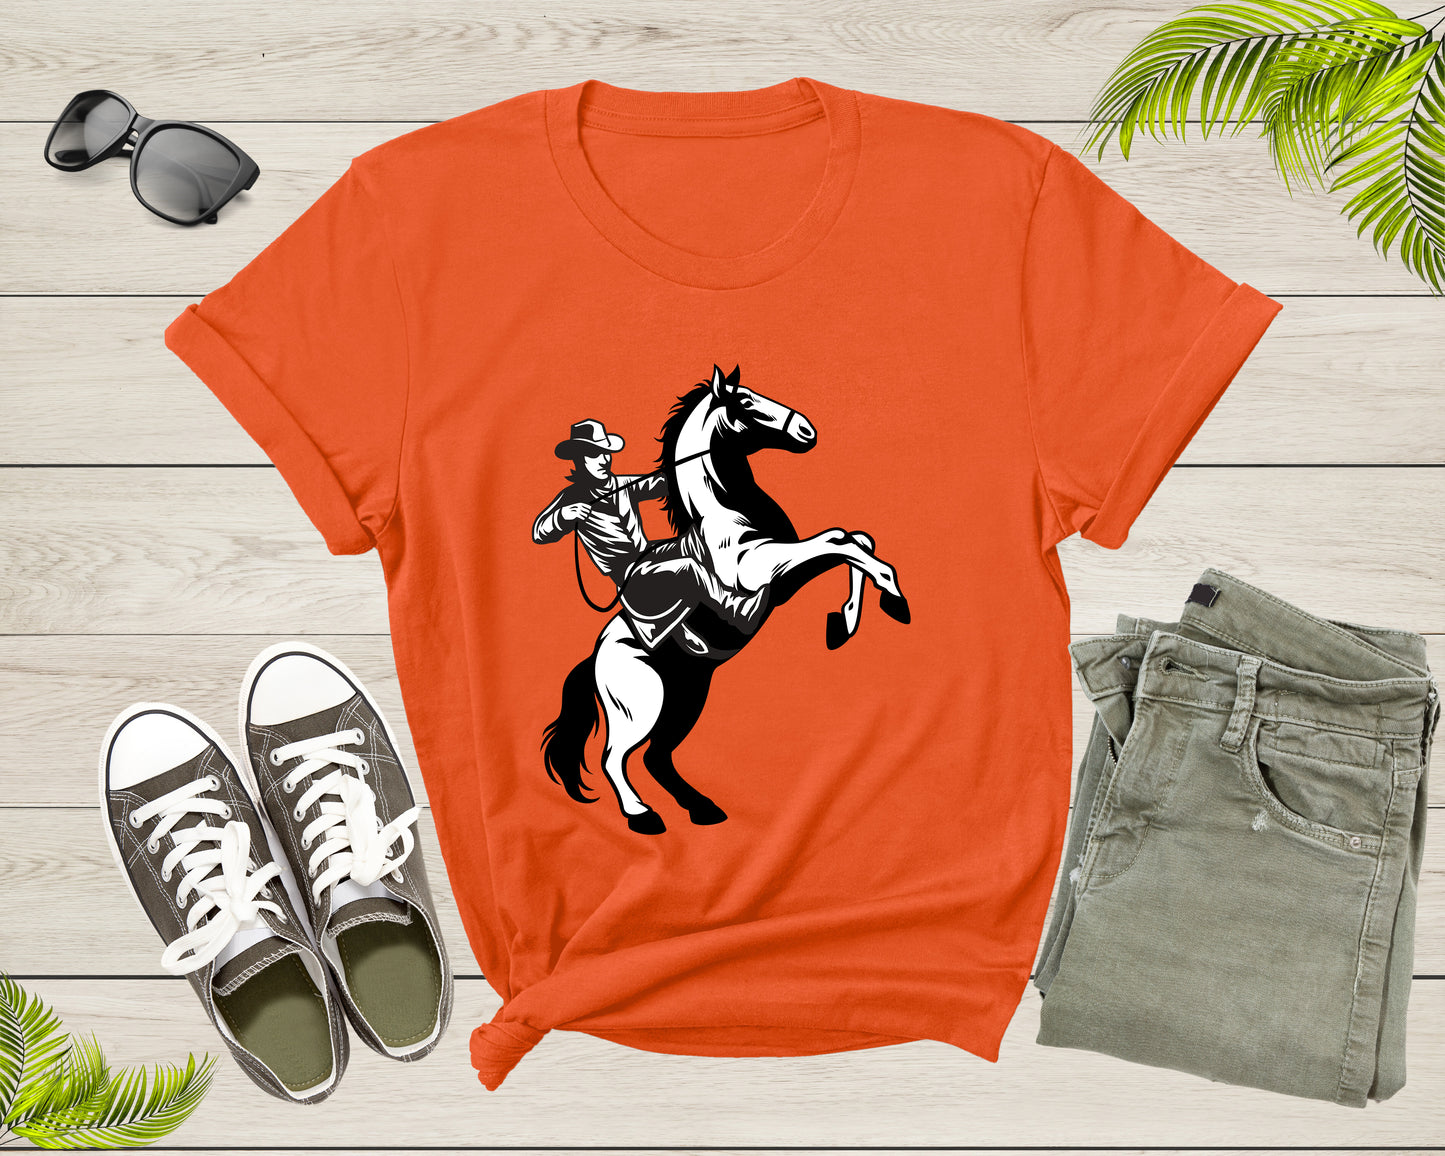 Cool Horse Pony Lover Gift Shirt For Men Women Kids Girls Boys Aesthetic Cowboy Horseback Rider Tshirt Graphic Sunset Silhouette T-shirt